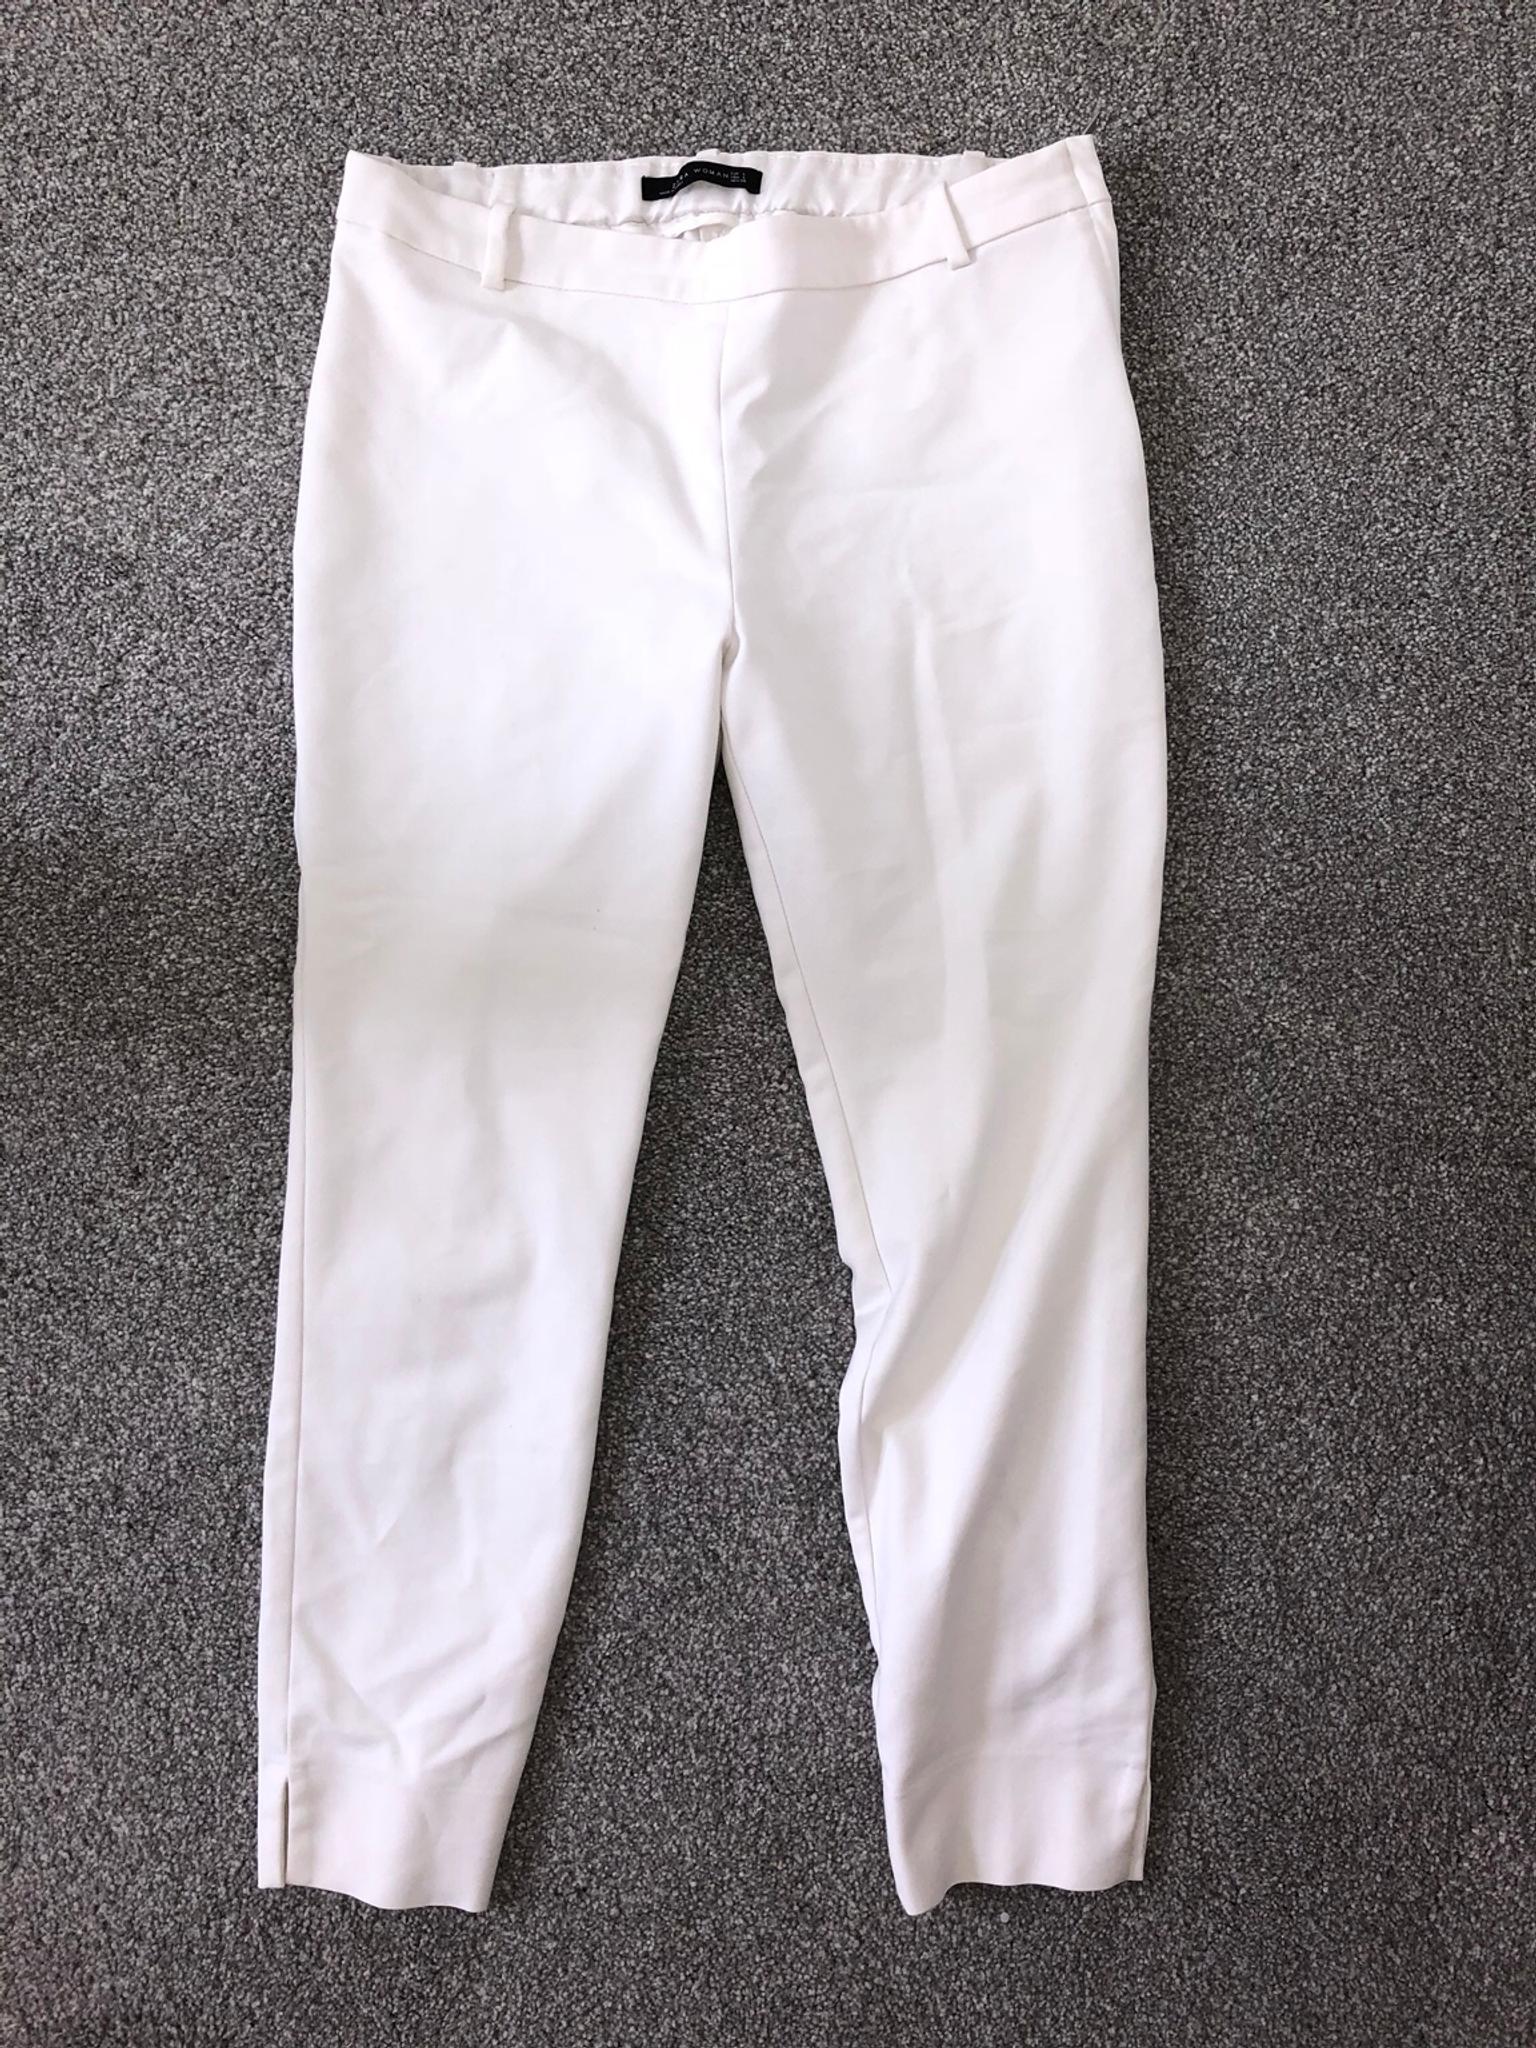 white zara pants